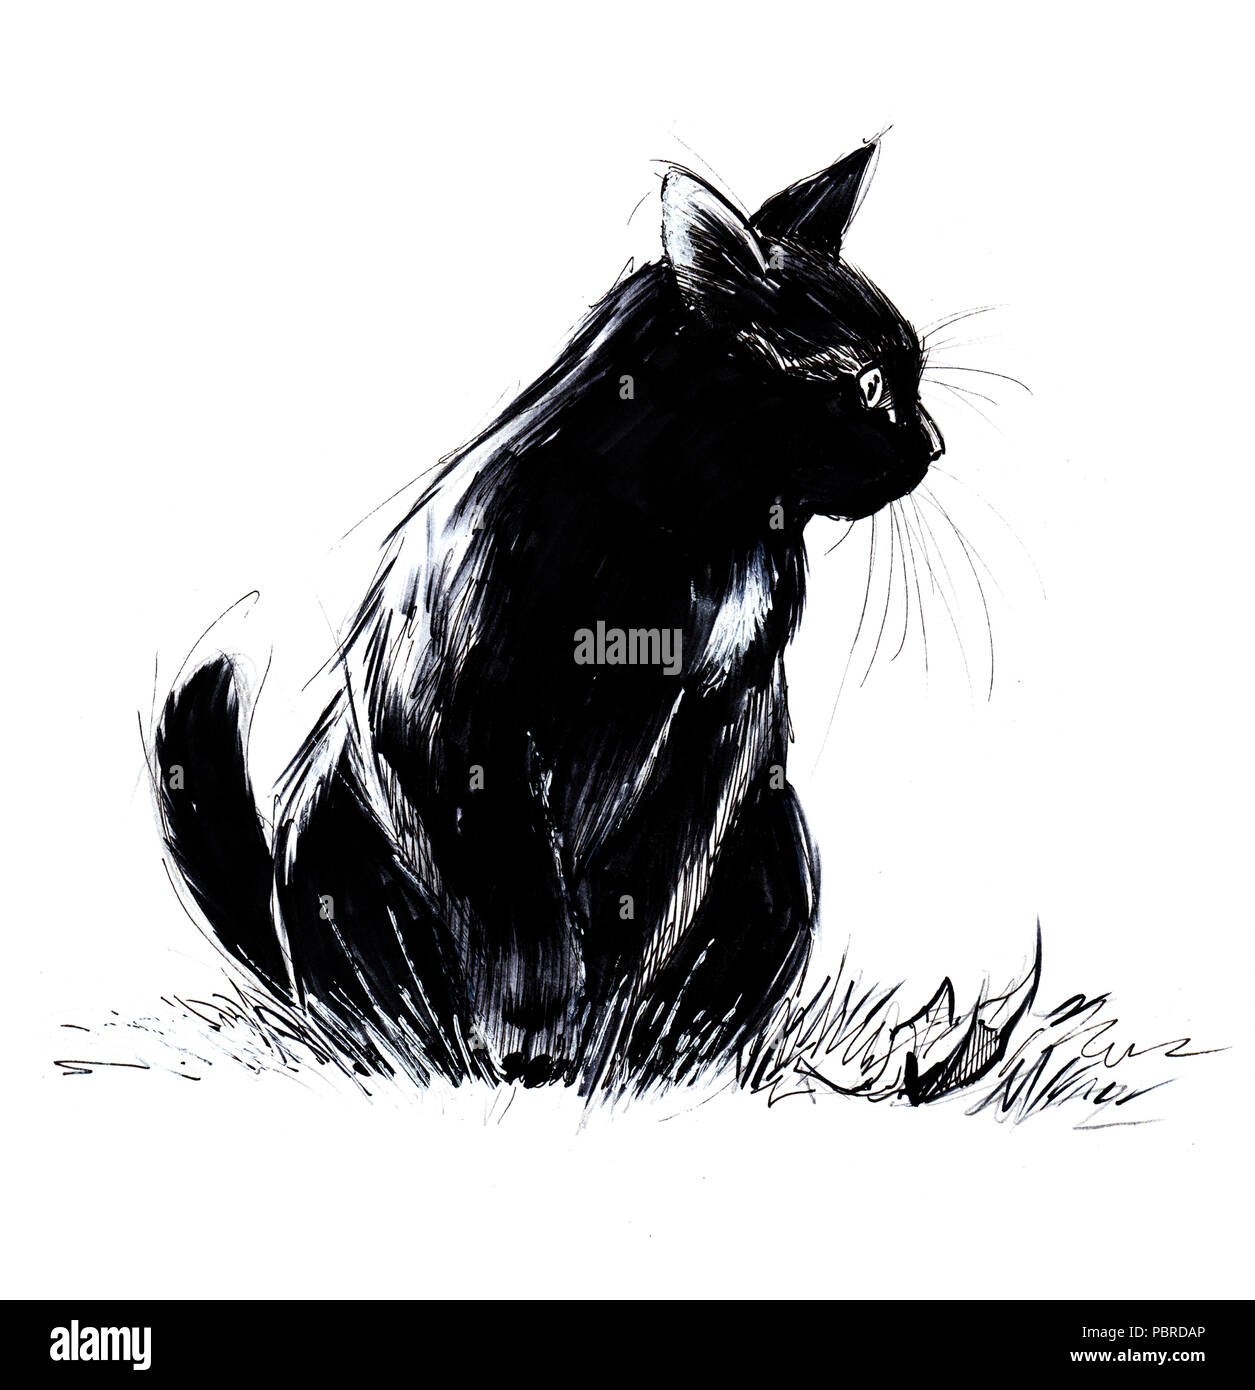 Gatto nero giocoso in attesa di caccia a balzare sulla sua preda Foto Stock